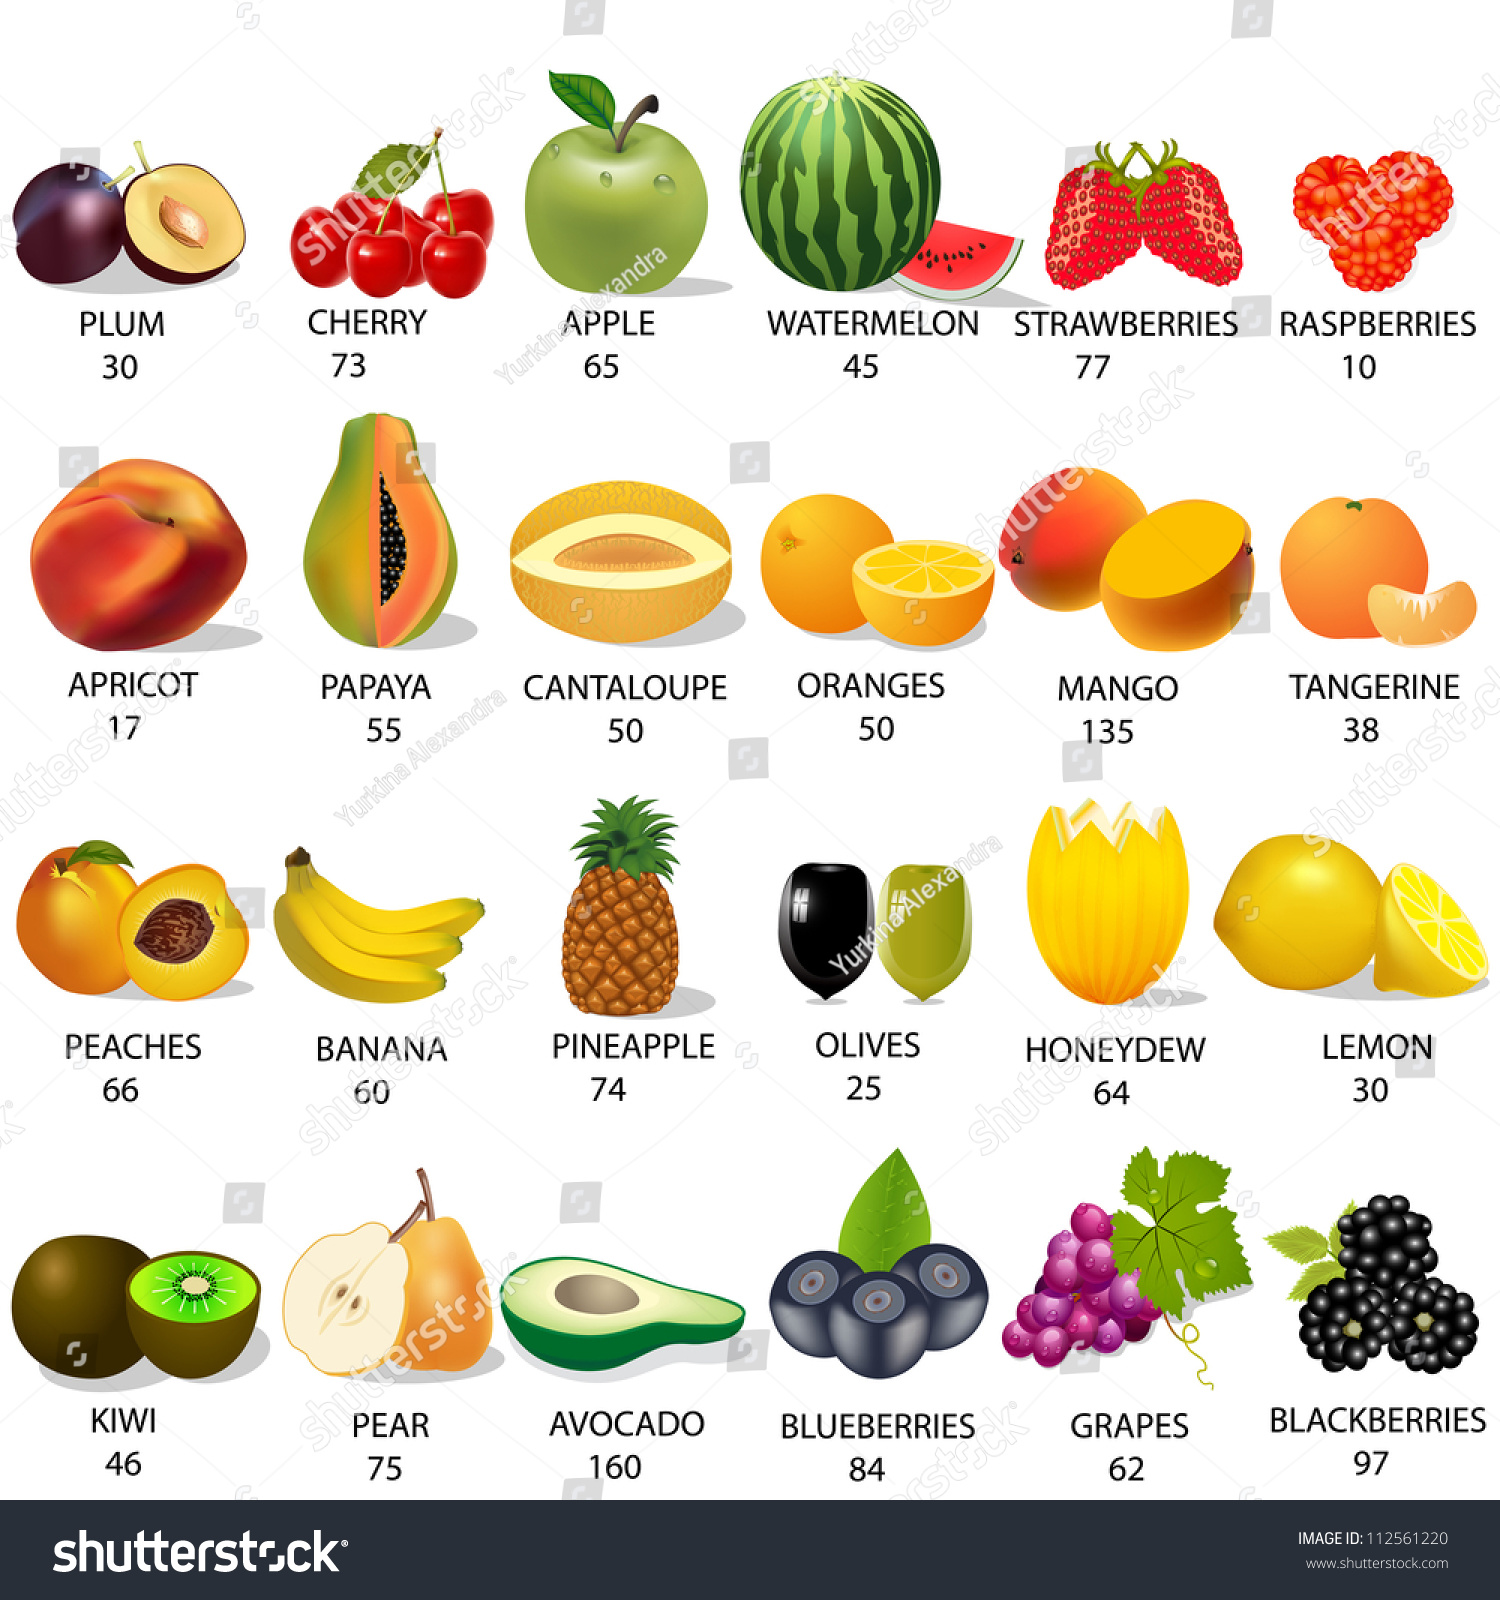 Яблоко перевести на английский. Самые калорийные фрукты и ягоды. Калории в фруктах. Самые низкокалорийные фрукты и ягоды. Ккал фруктов.